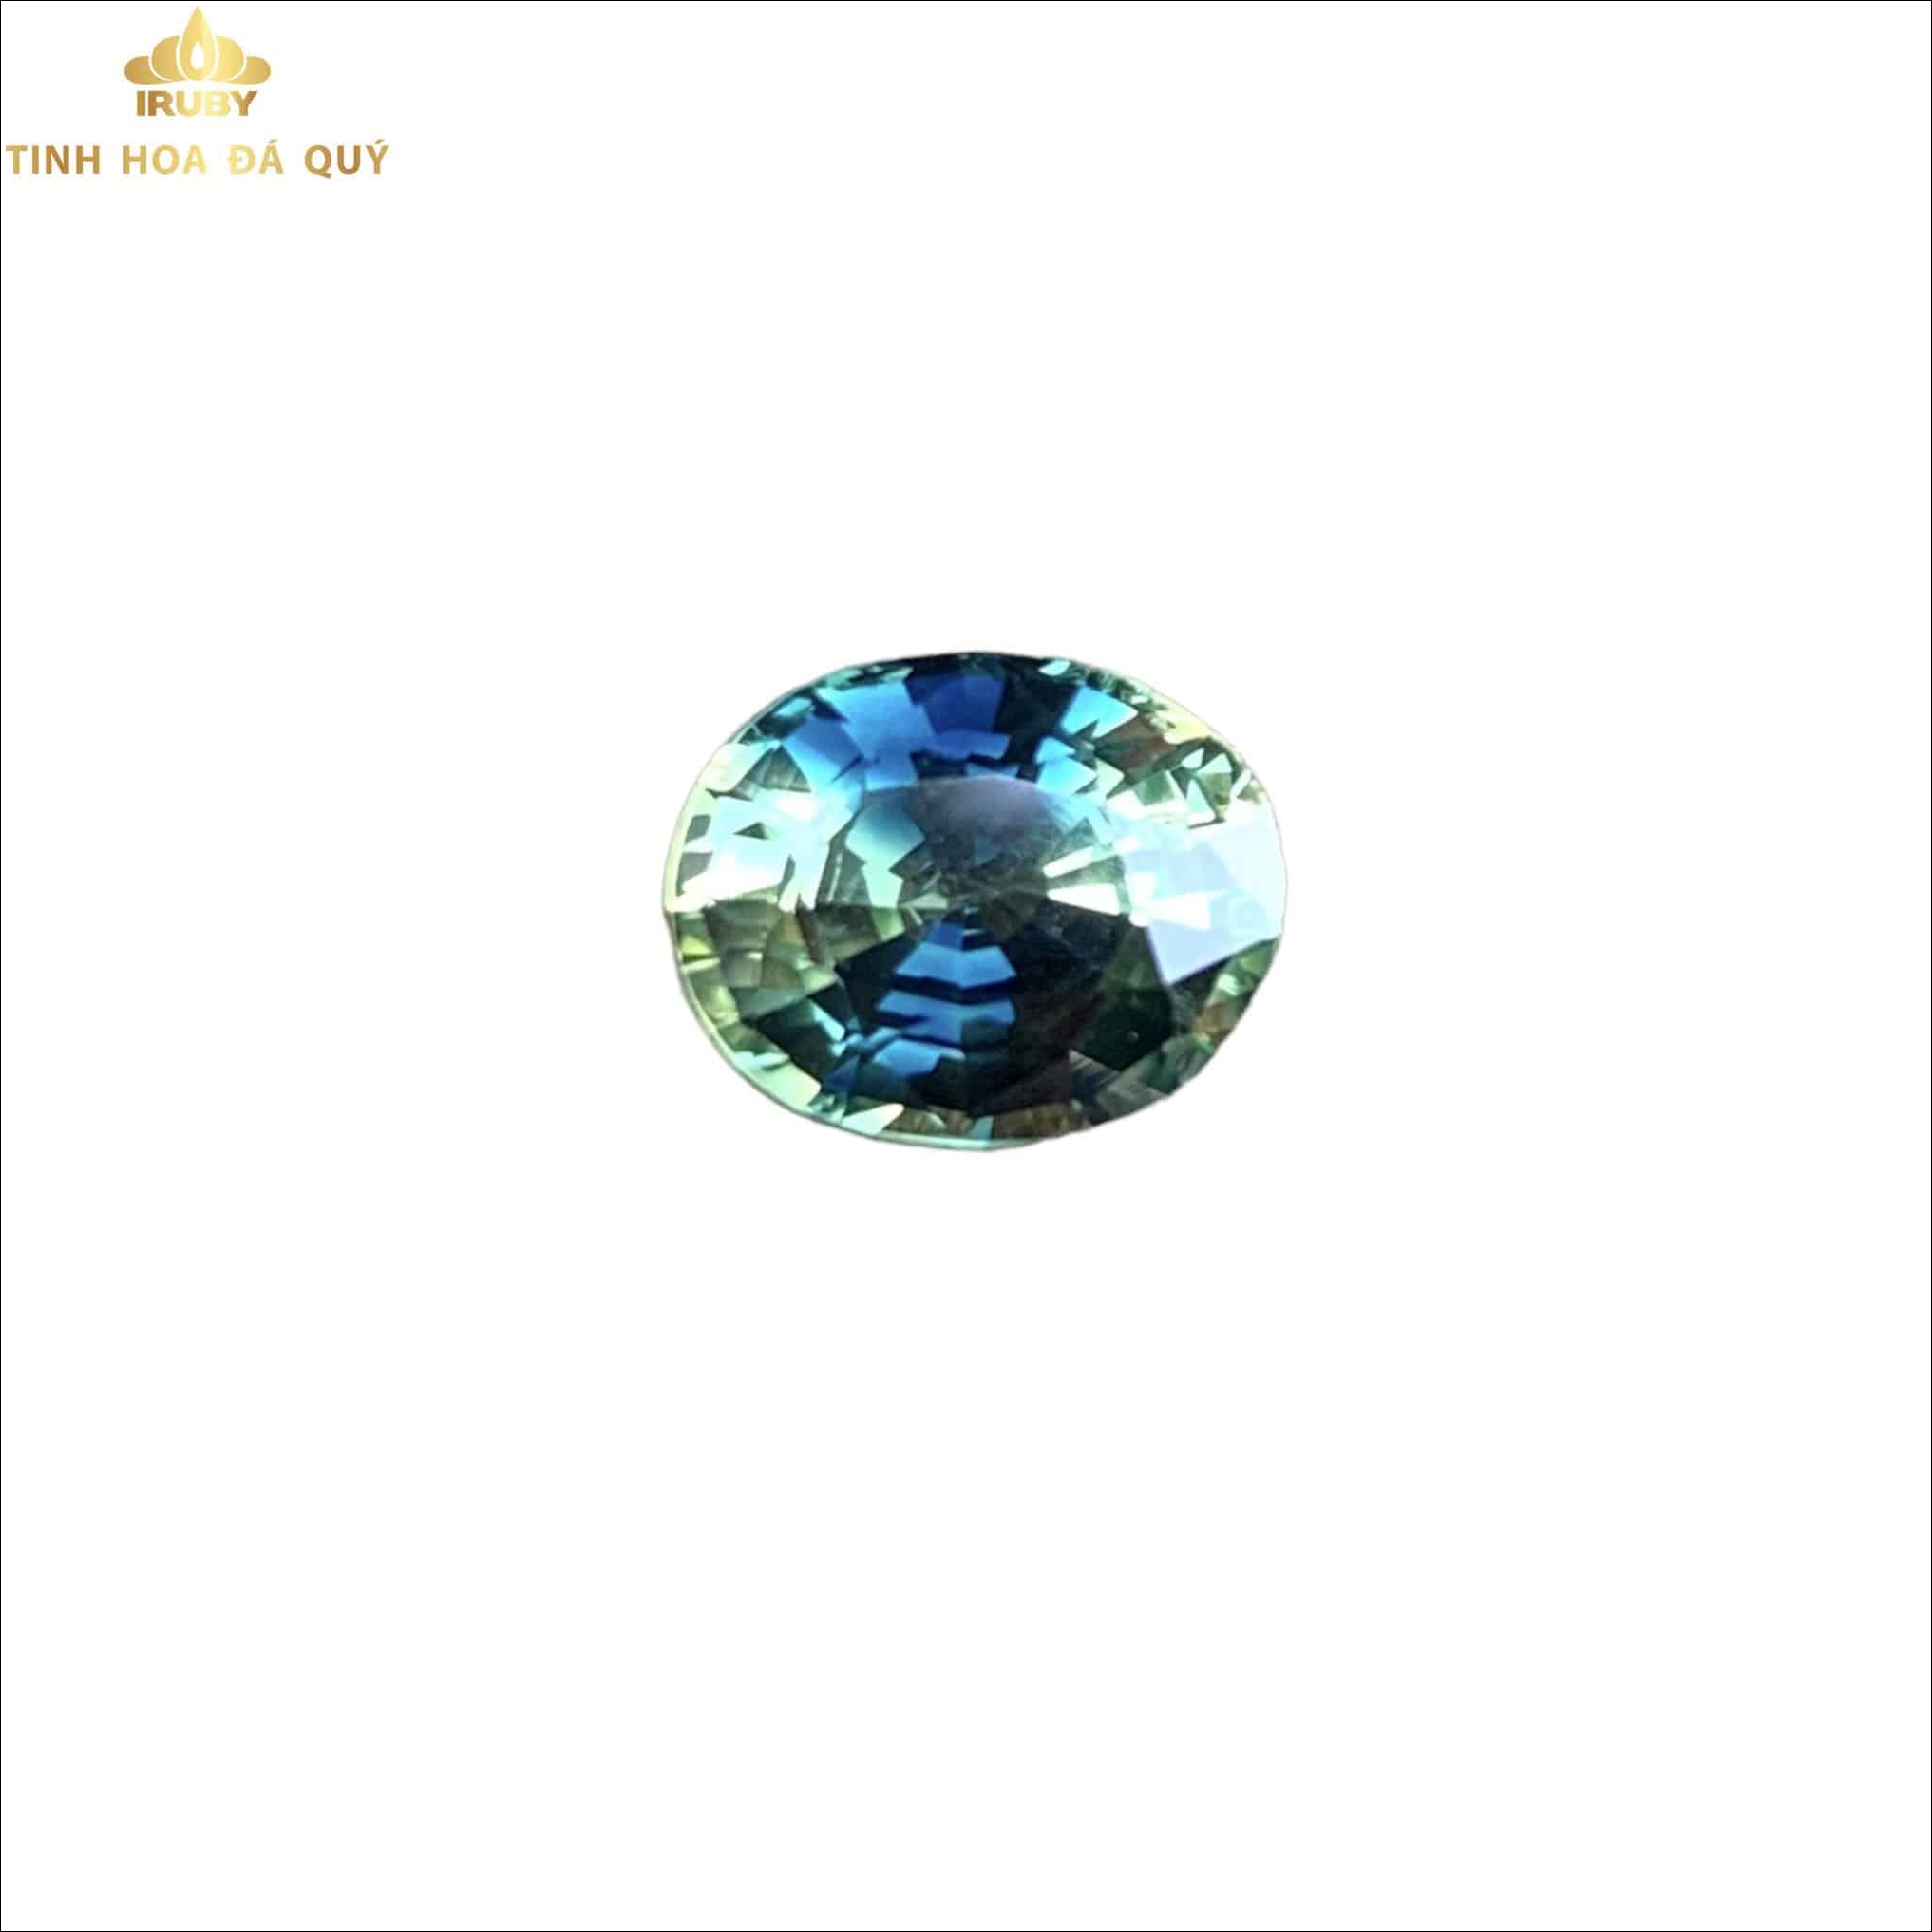 Viên Bicolor Sapphire 3 màu độc hiếm đẹp 3ct - IRBS 22113